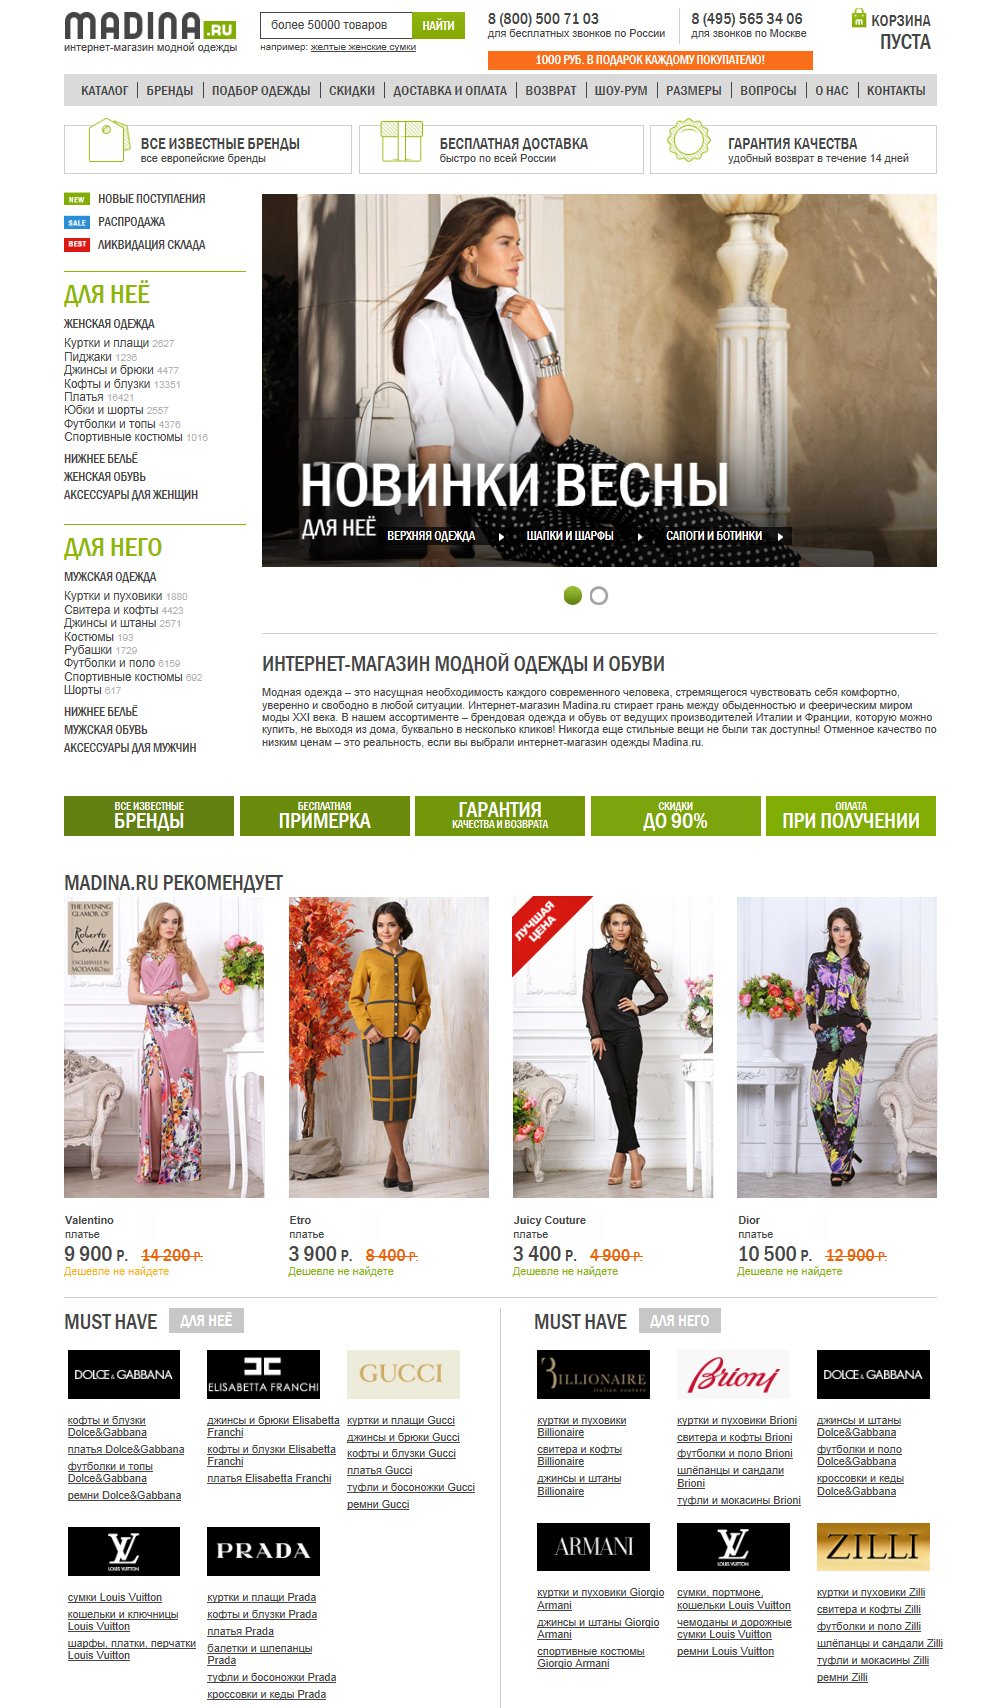 Главная страница интернет-магазина модной одежды Madina.ru